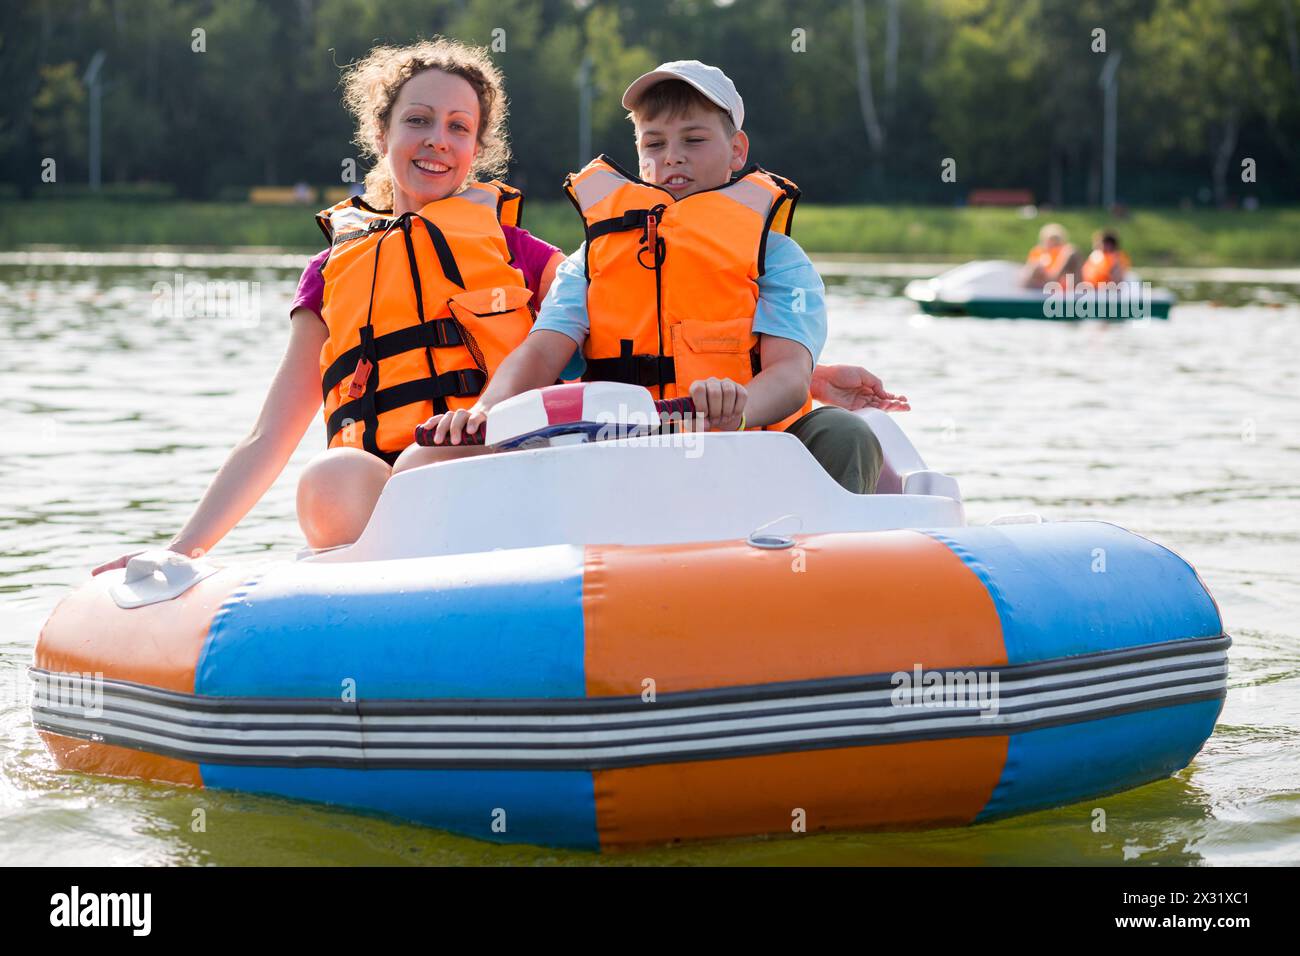 Figlio e madre nei giubbotti di salvataggio che galleggiano lungo il fiume in una barca di gomma con ruota elettrica Foto Stock